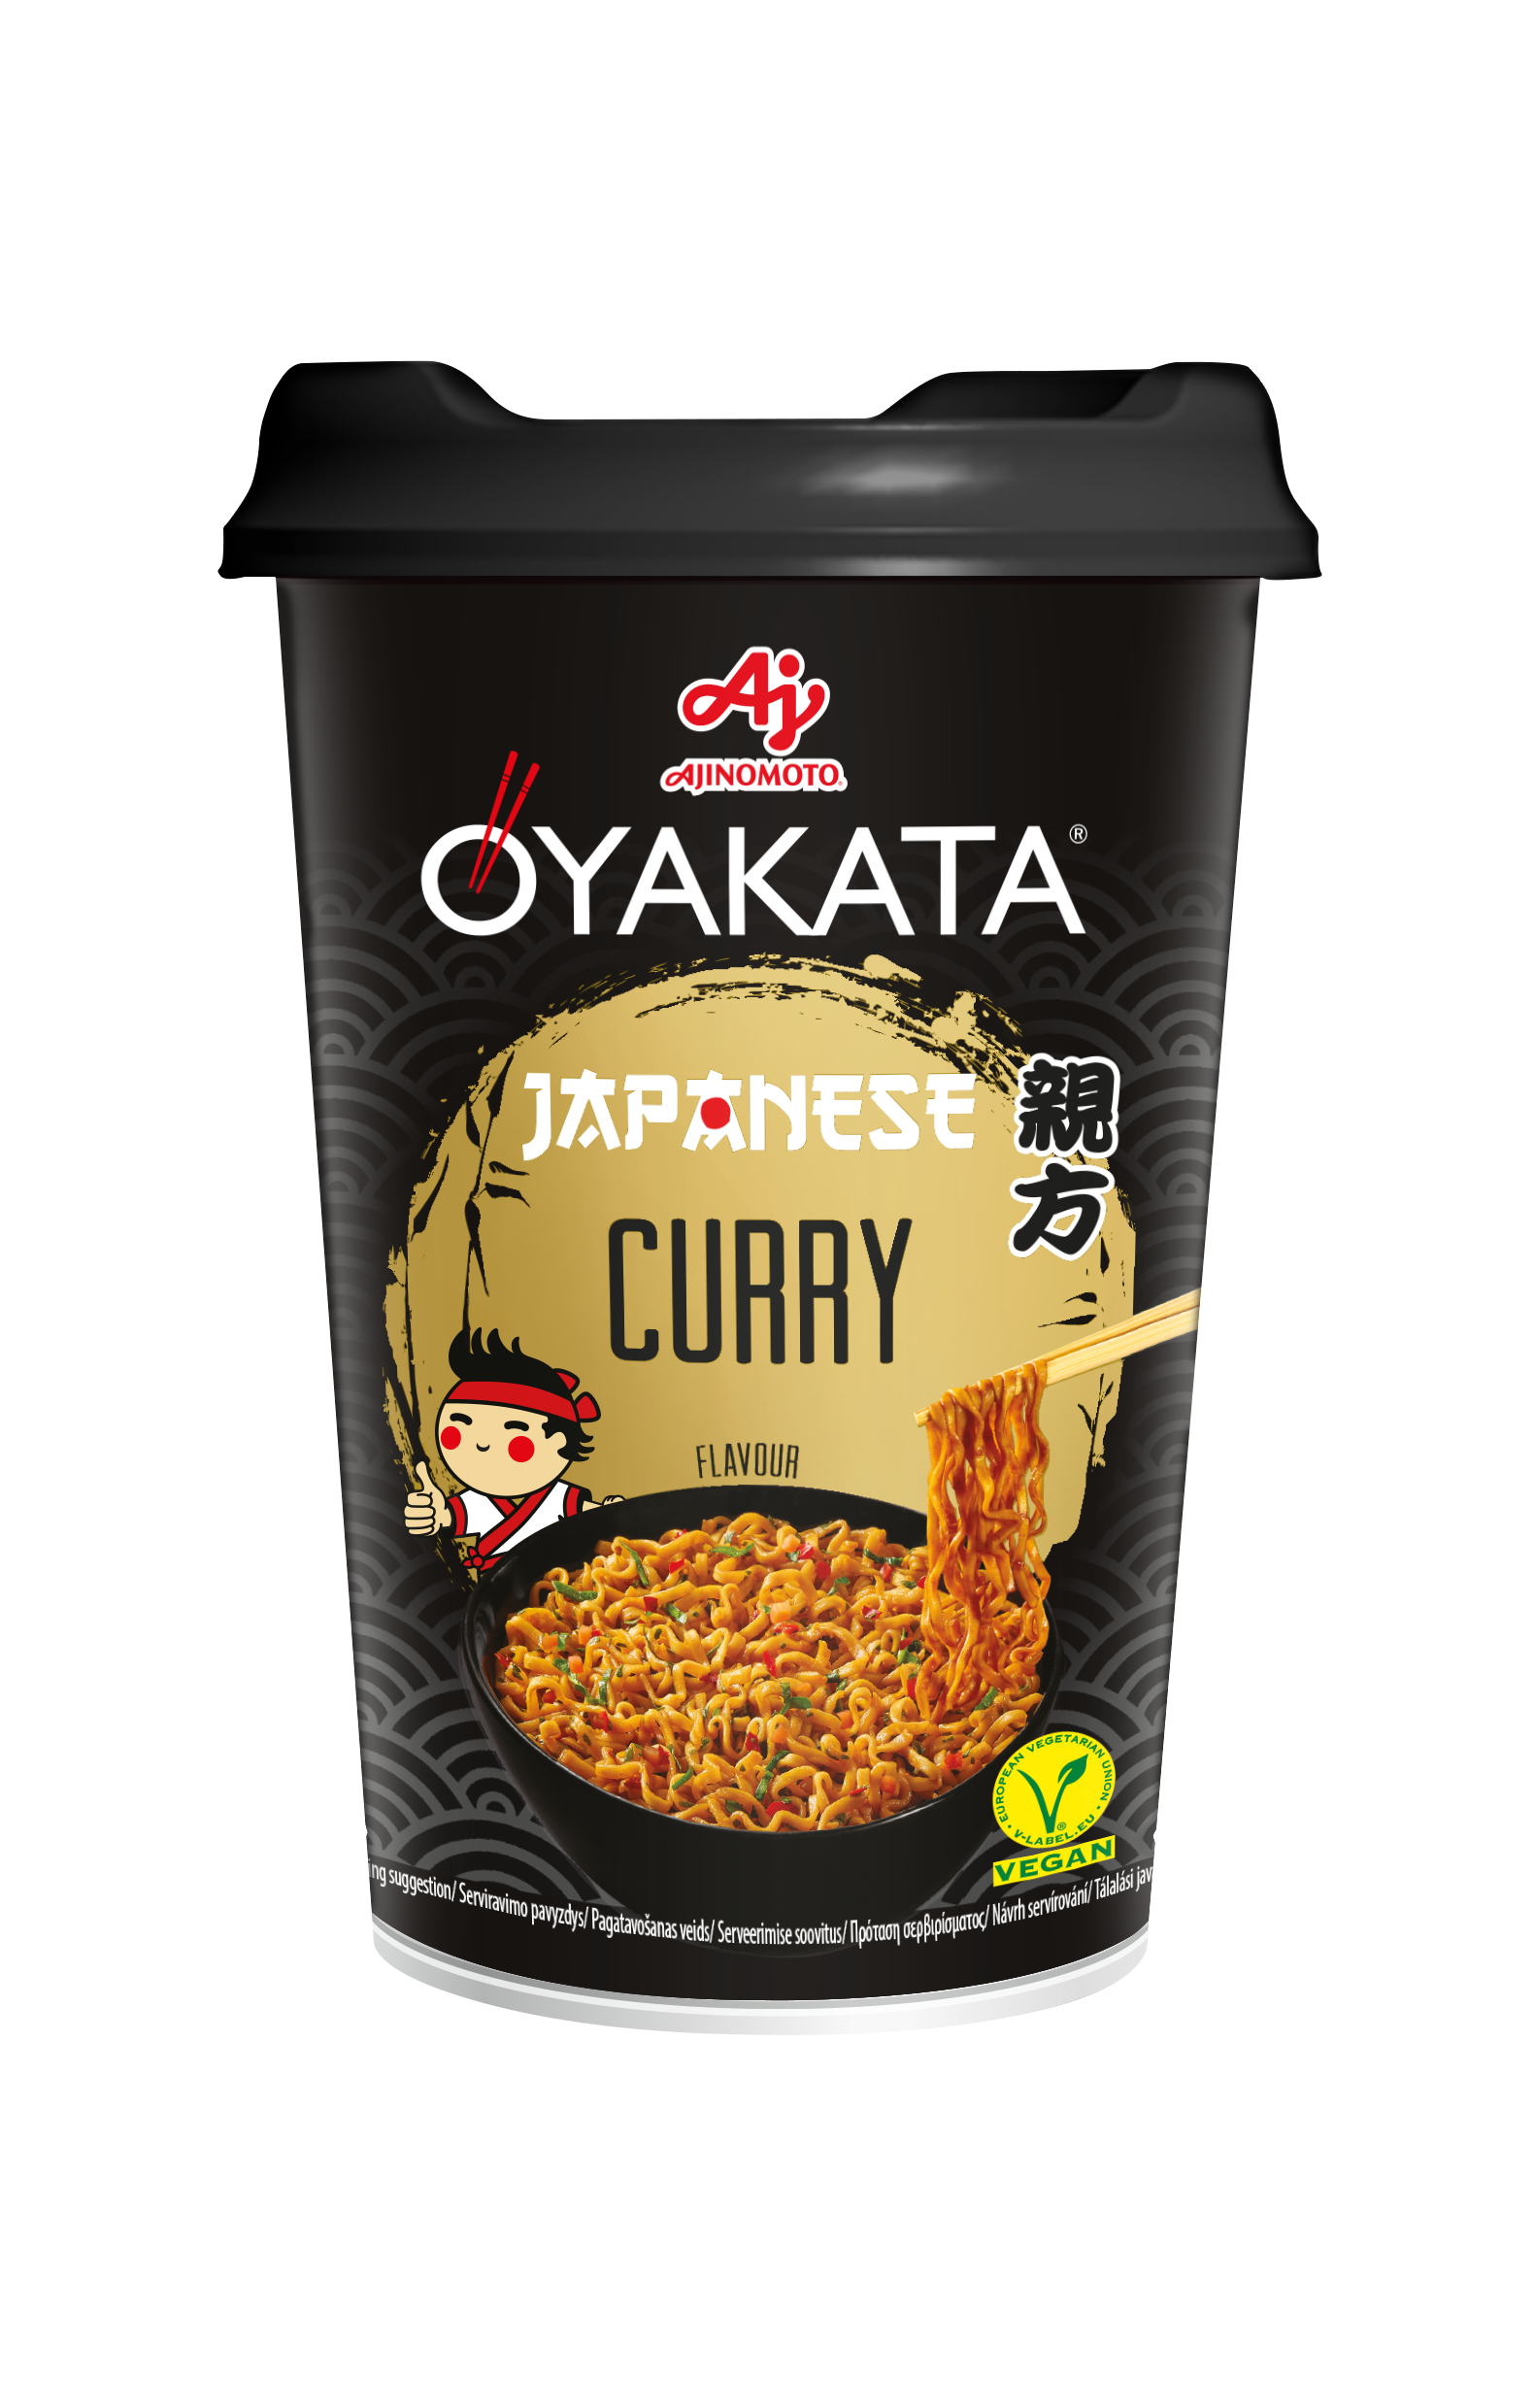 OYAKATA Yakisoba Japanese Curry 90g